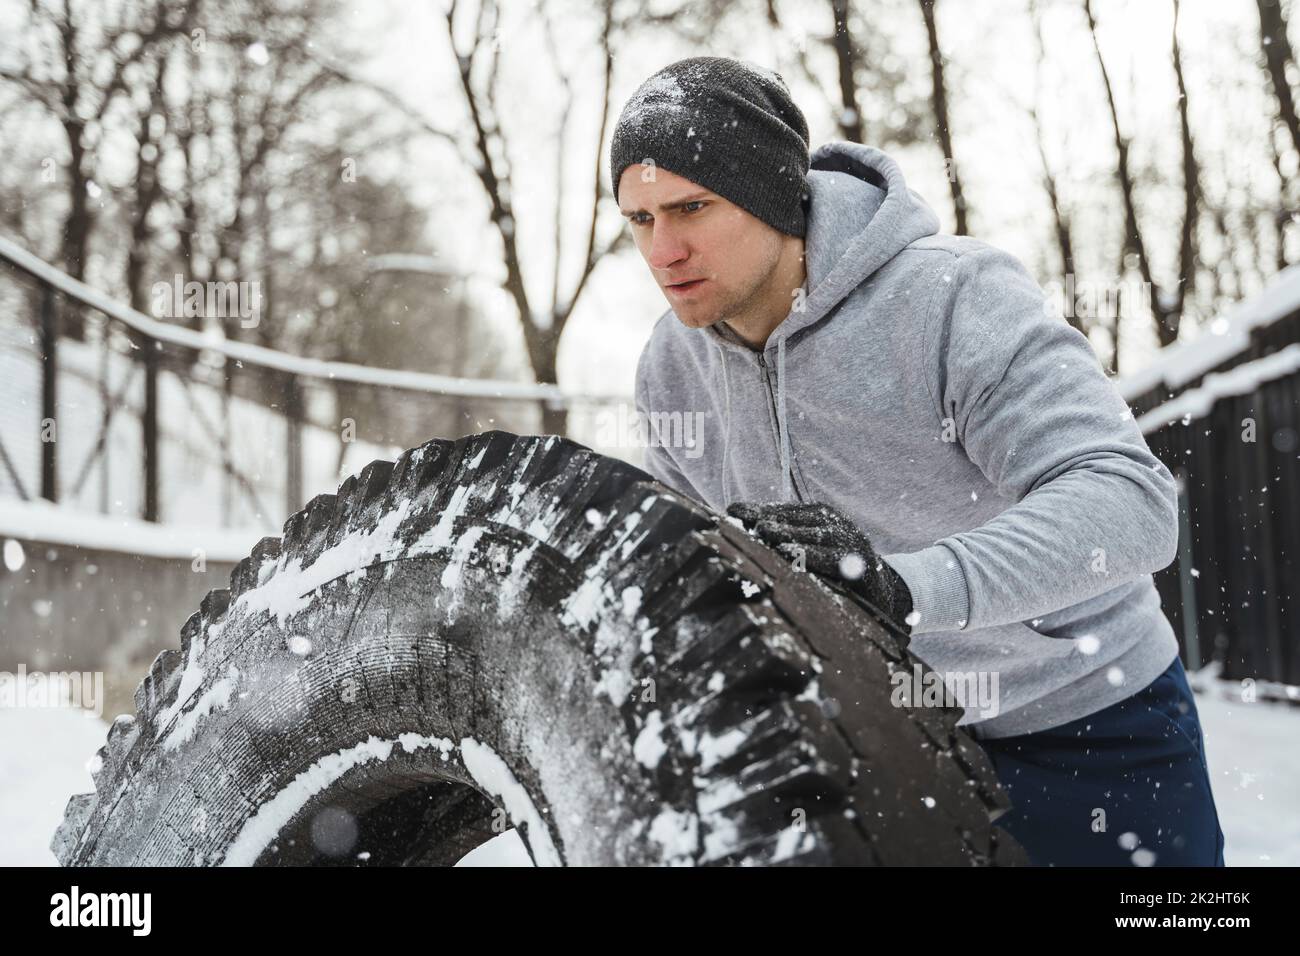 Un sportif fort pendant son entraînement multisport pendant les journées d'hiver enneigées et froides. Banque D'Images